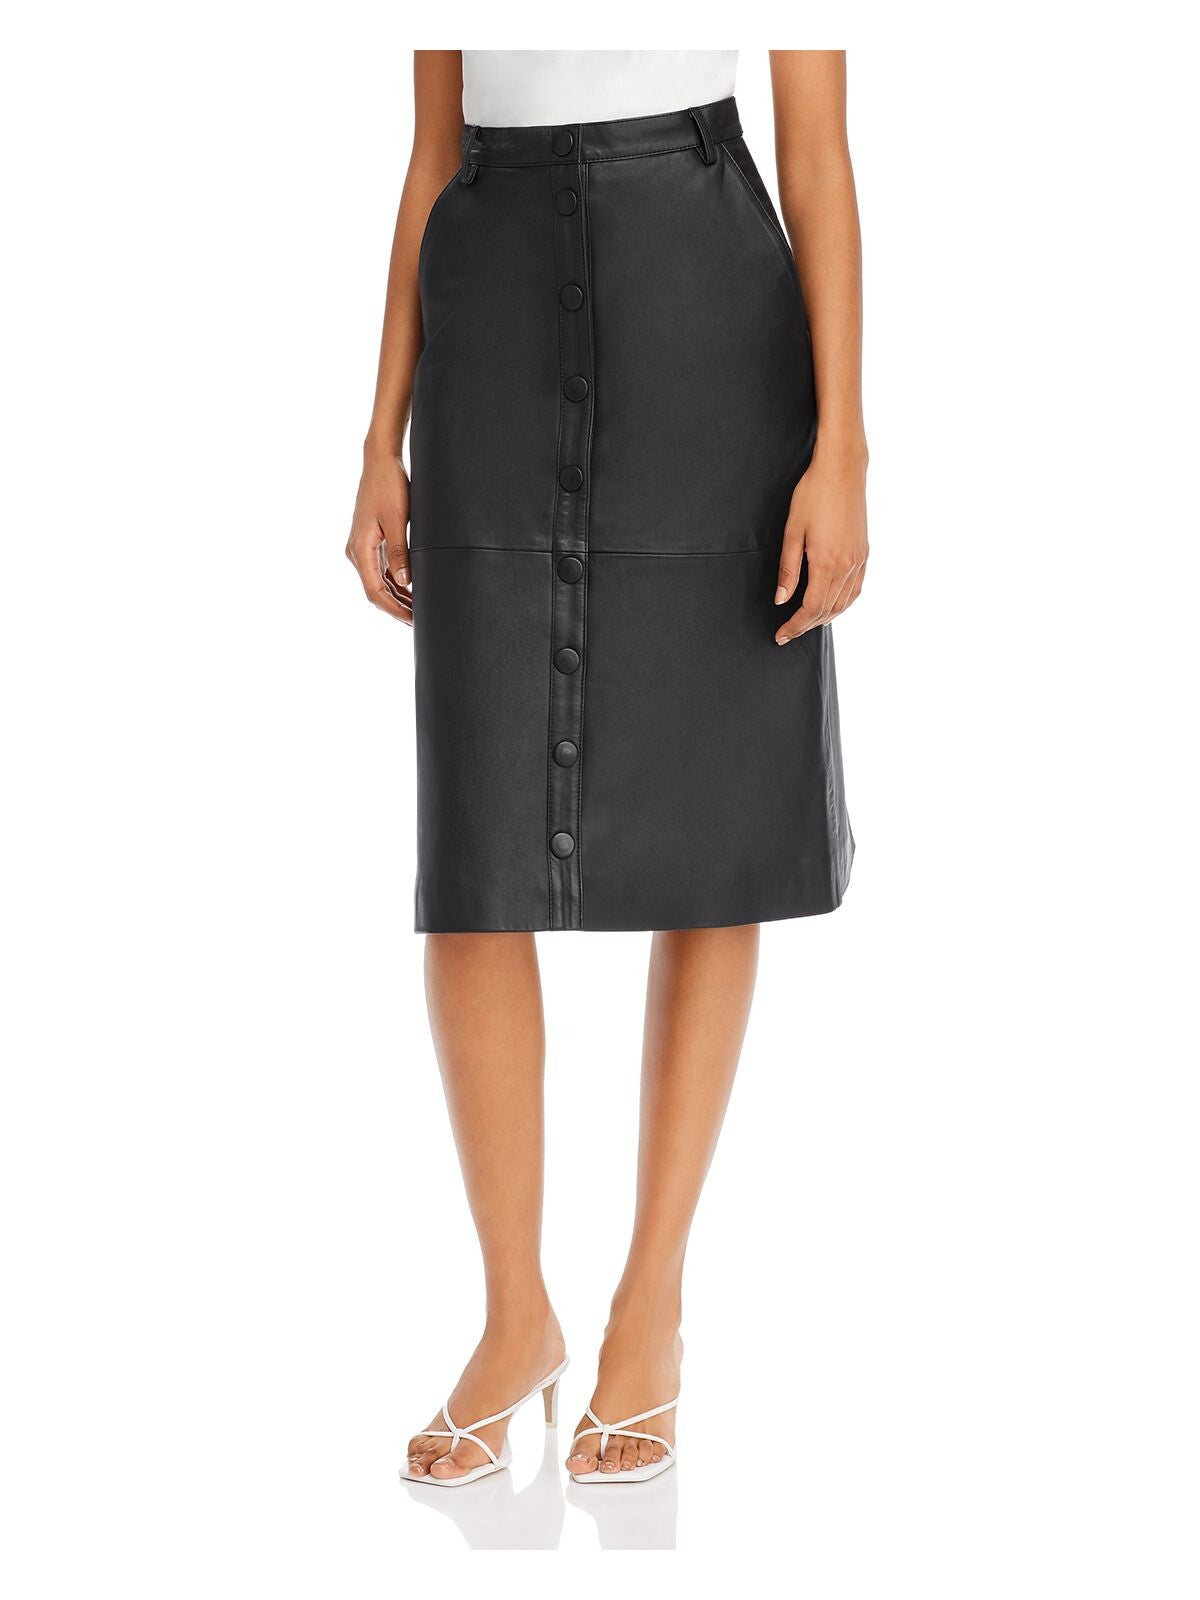 REMAIN Womens Black Knee Length Skirt 36